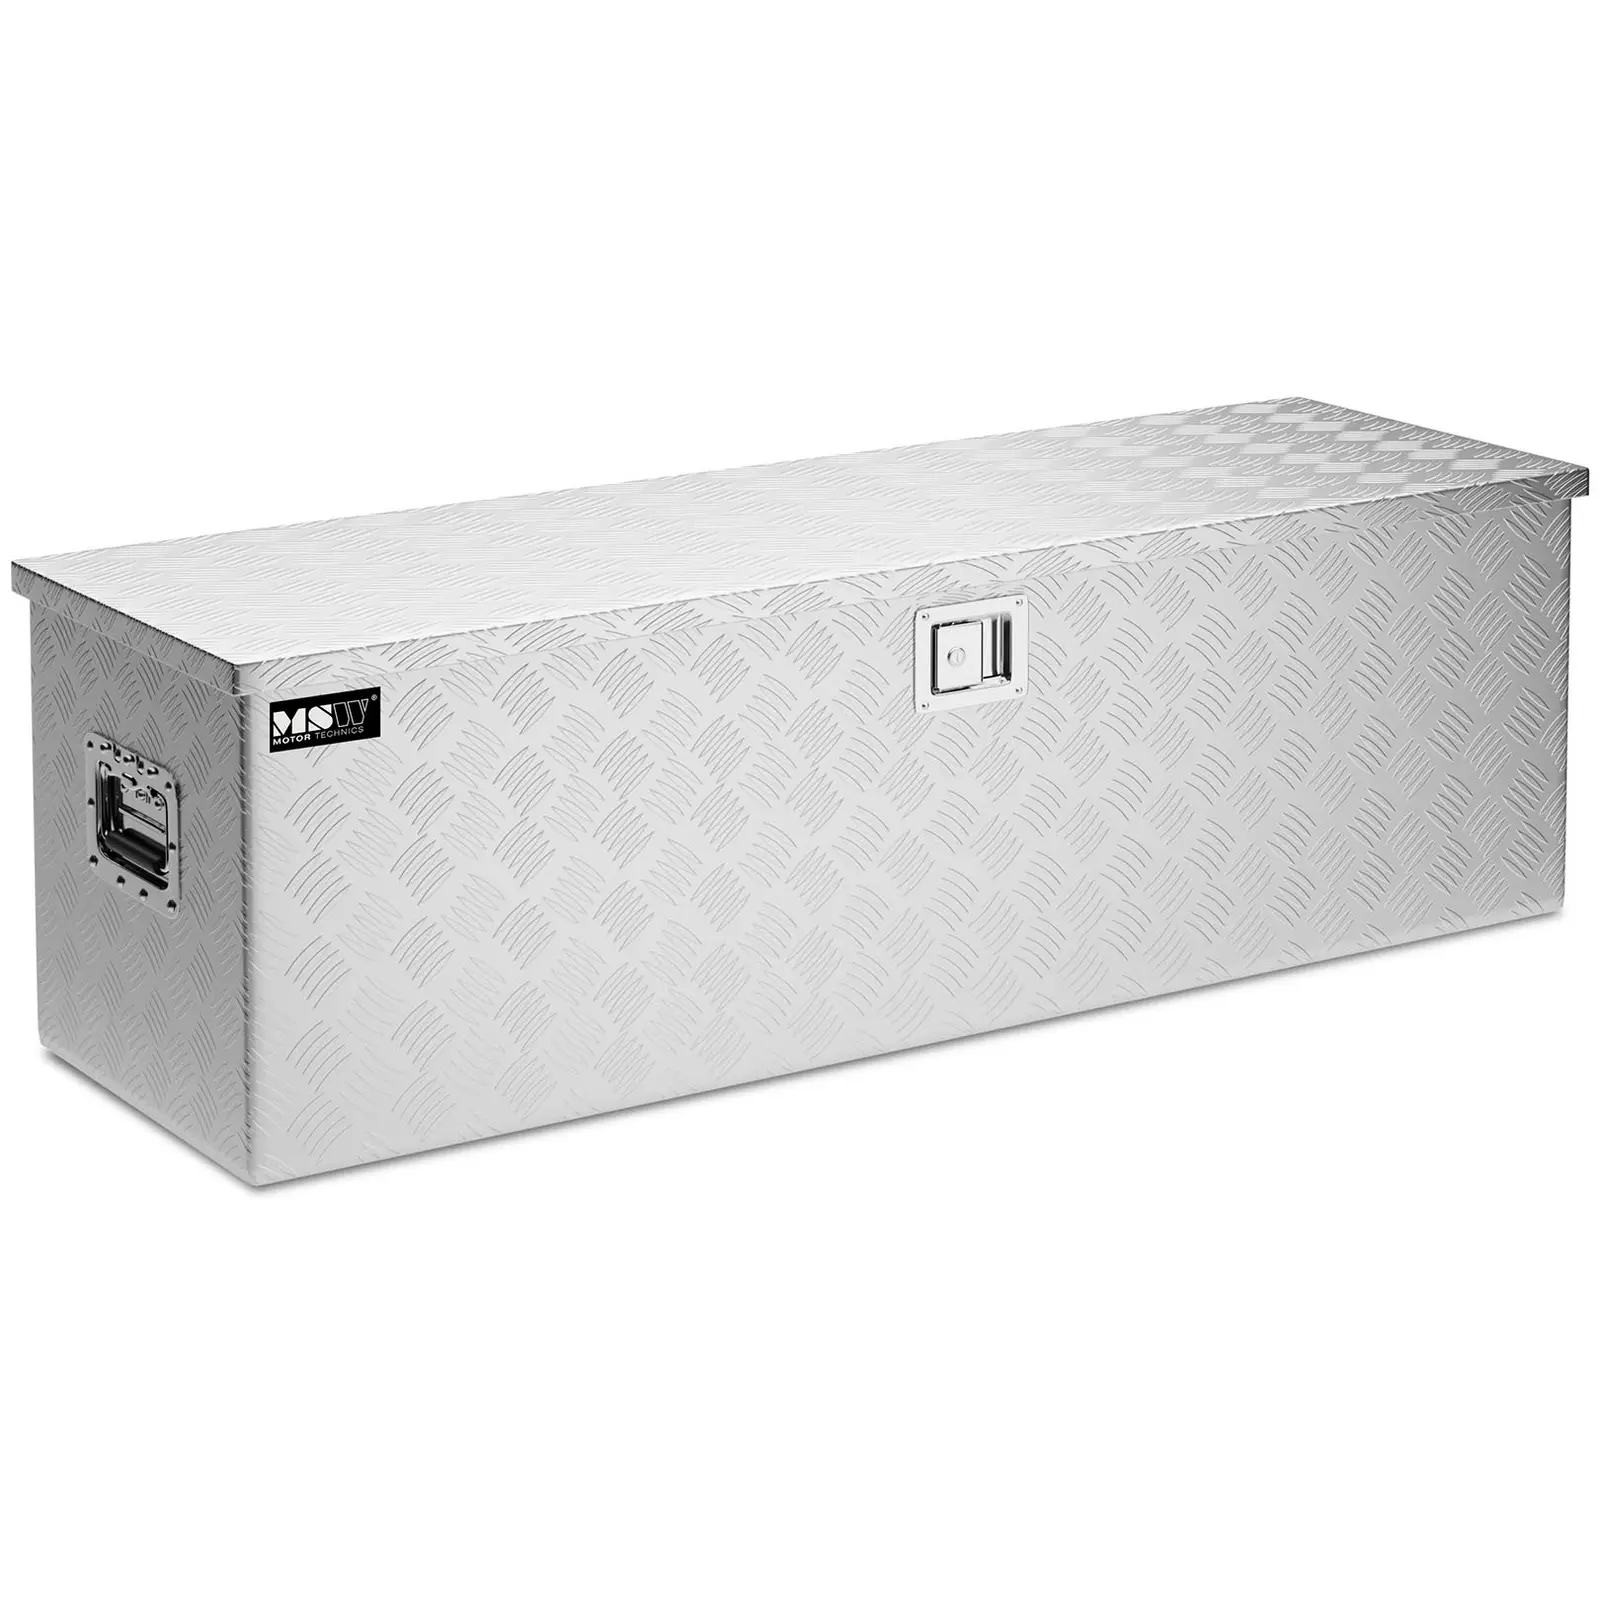 Aluminium Tool Box - 124 x 38 x 38 cm - 150 L